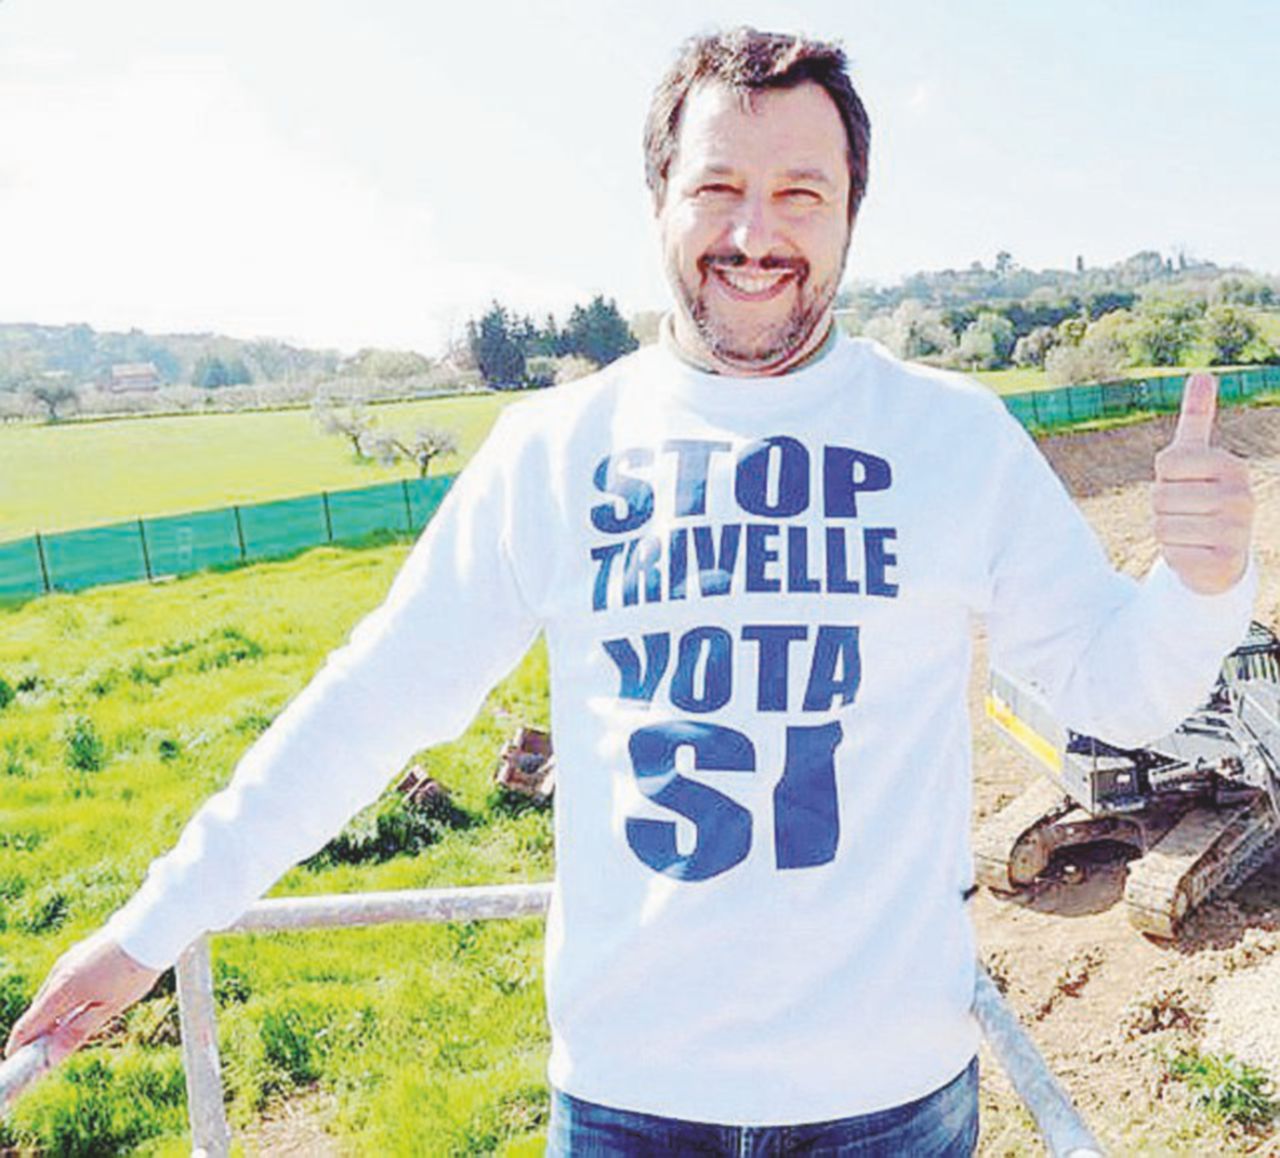 Copertina di Trivelle, l’emendamento che spaventa Salvini